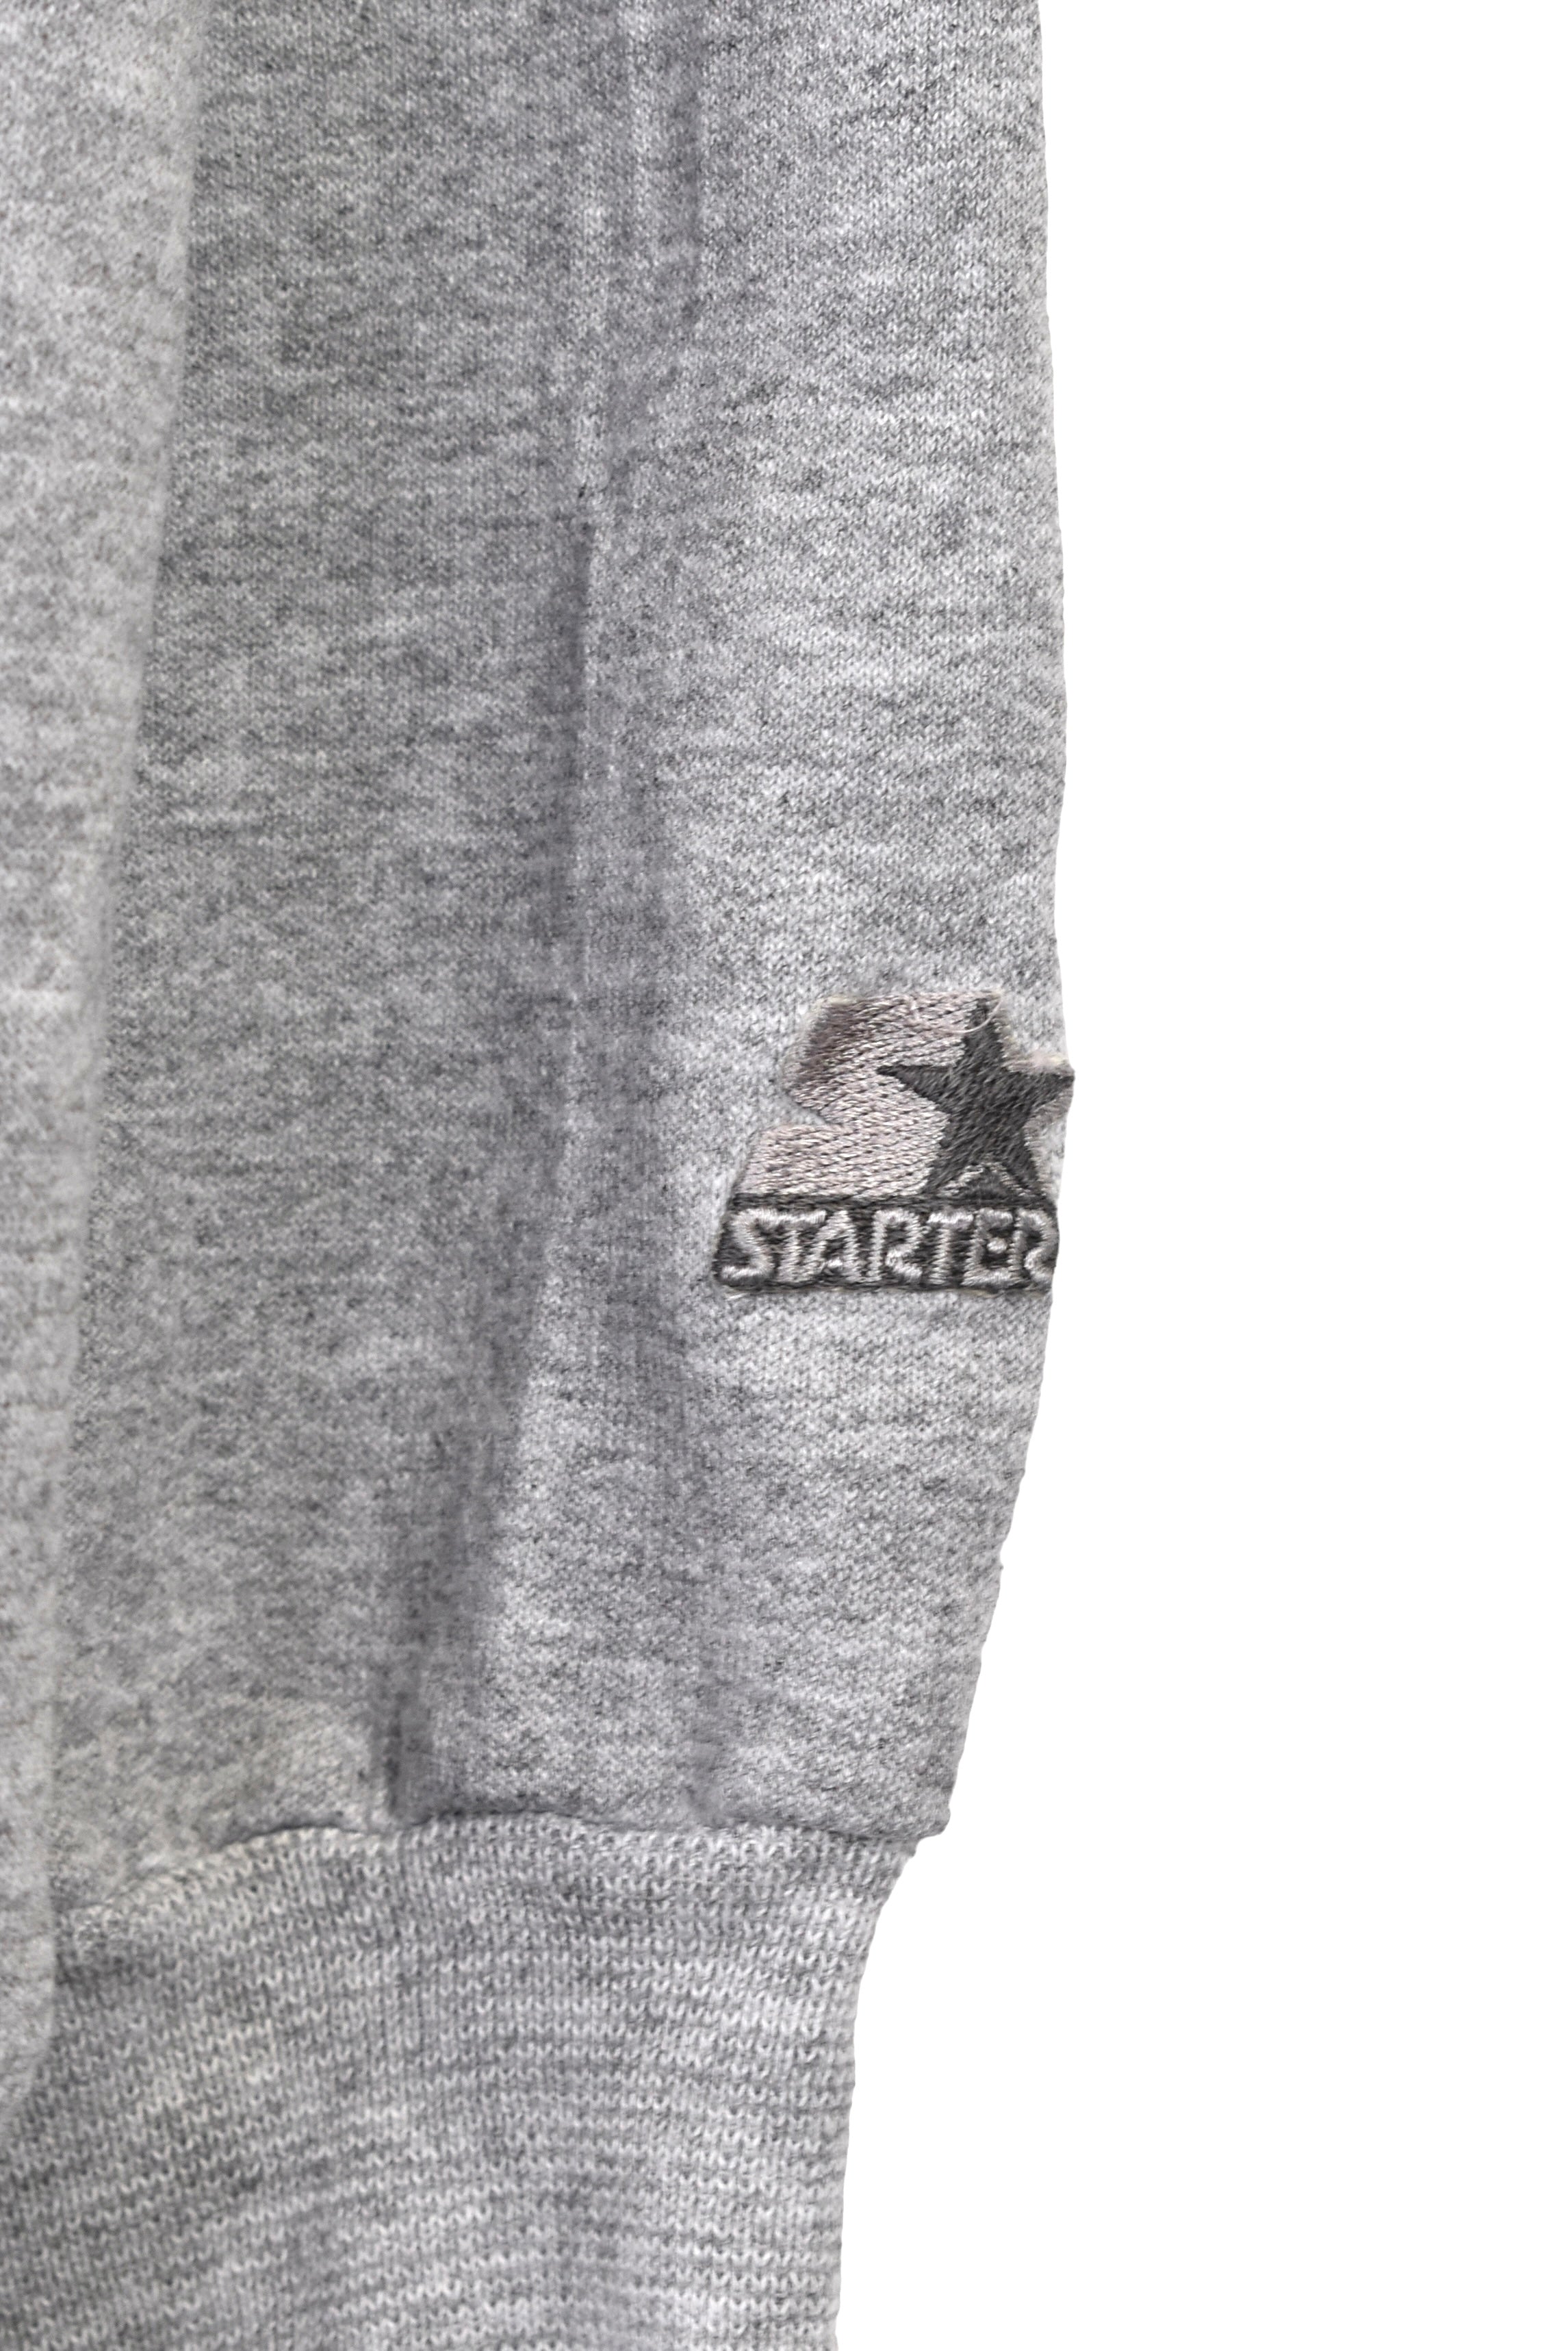 Vintage Starter sweatshirt XL, grey embroidered crewneck